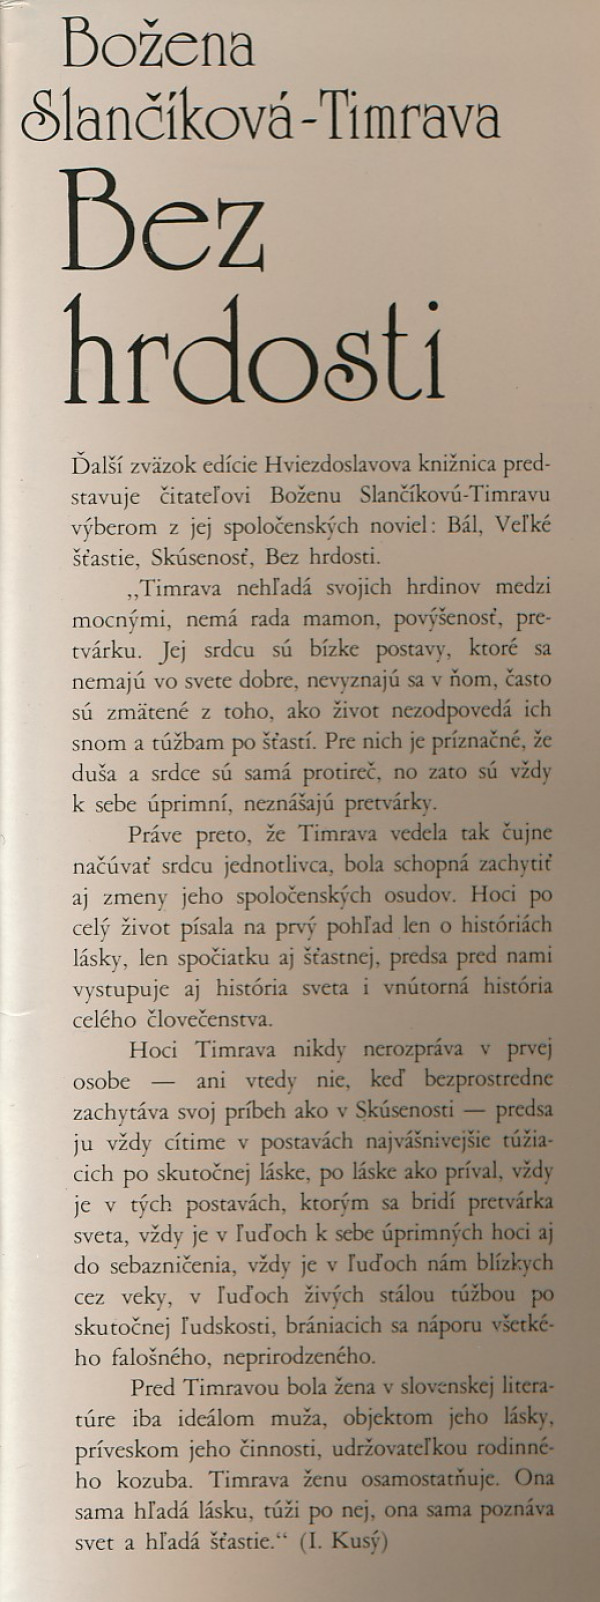 Božena Slančíková-Timrava: BEZ HRDOSTI